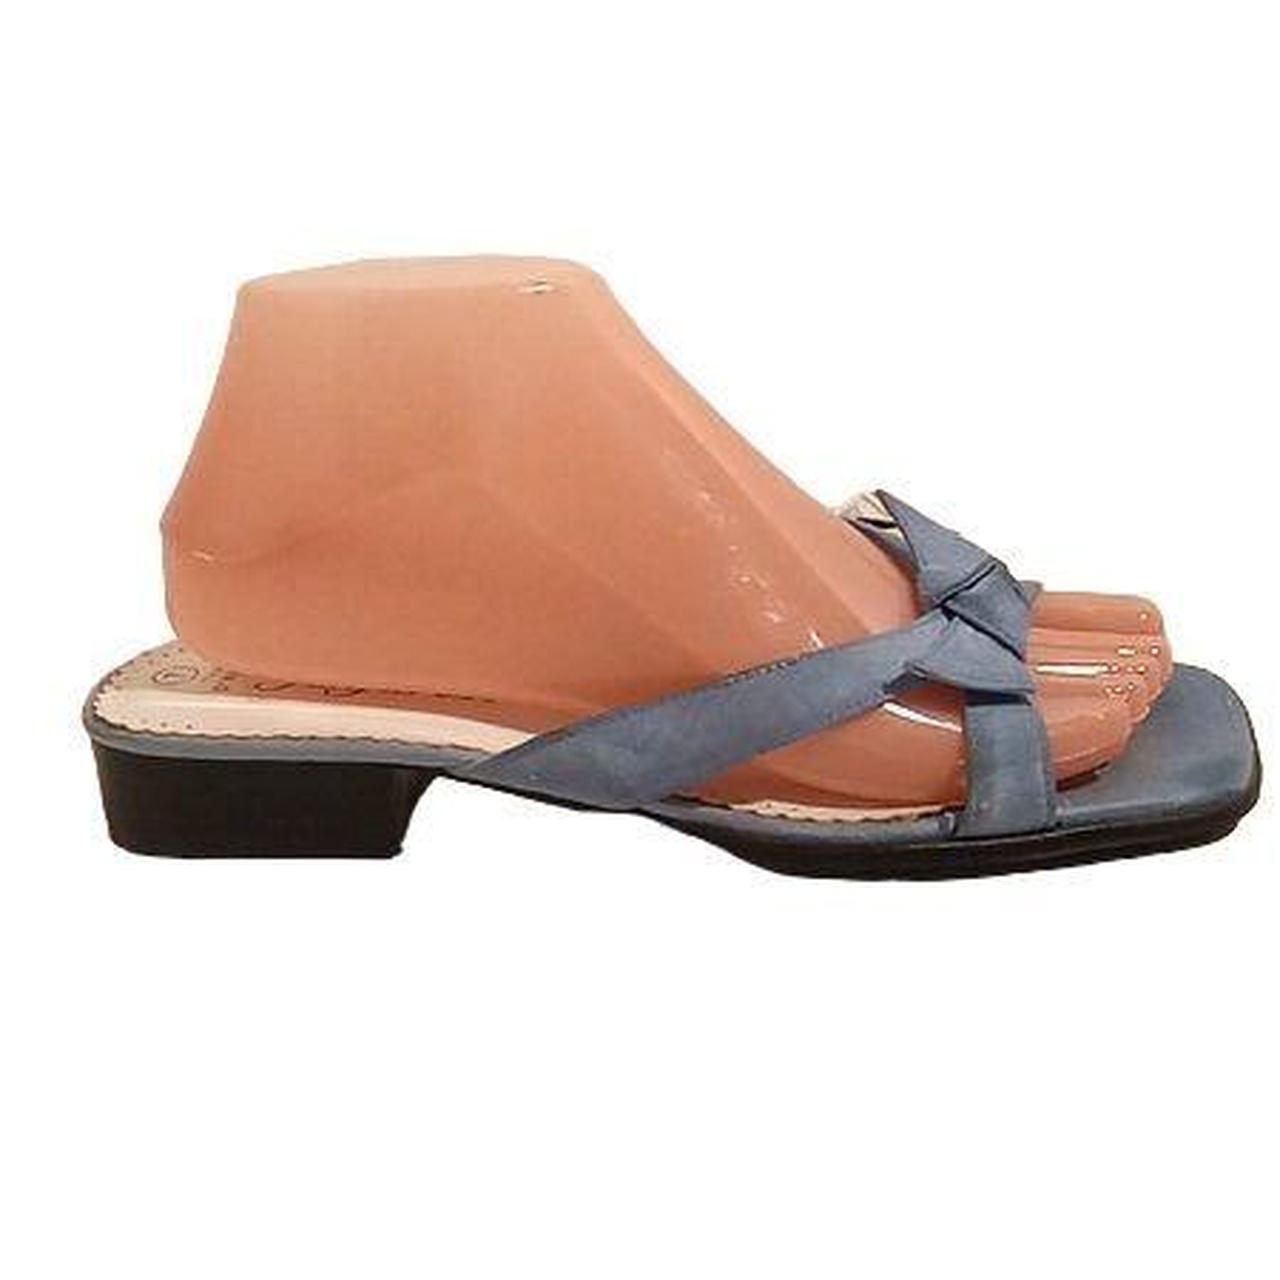 Fanfares Blue Square Toe Sandals Women's Size 7 THAI... - Depop